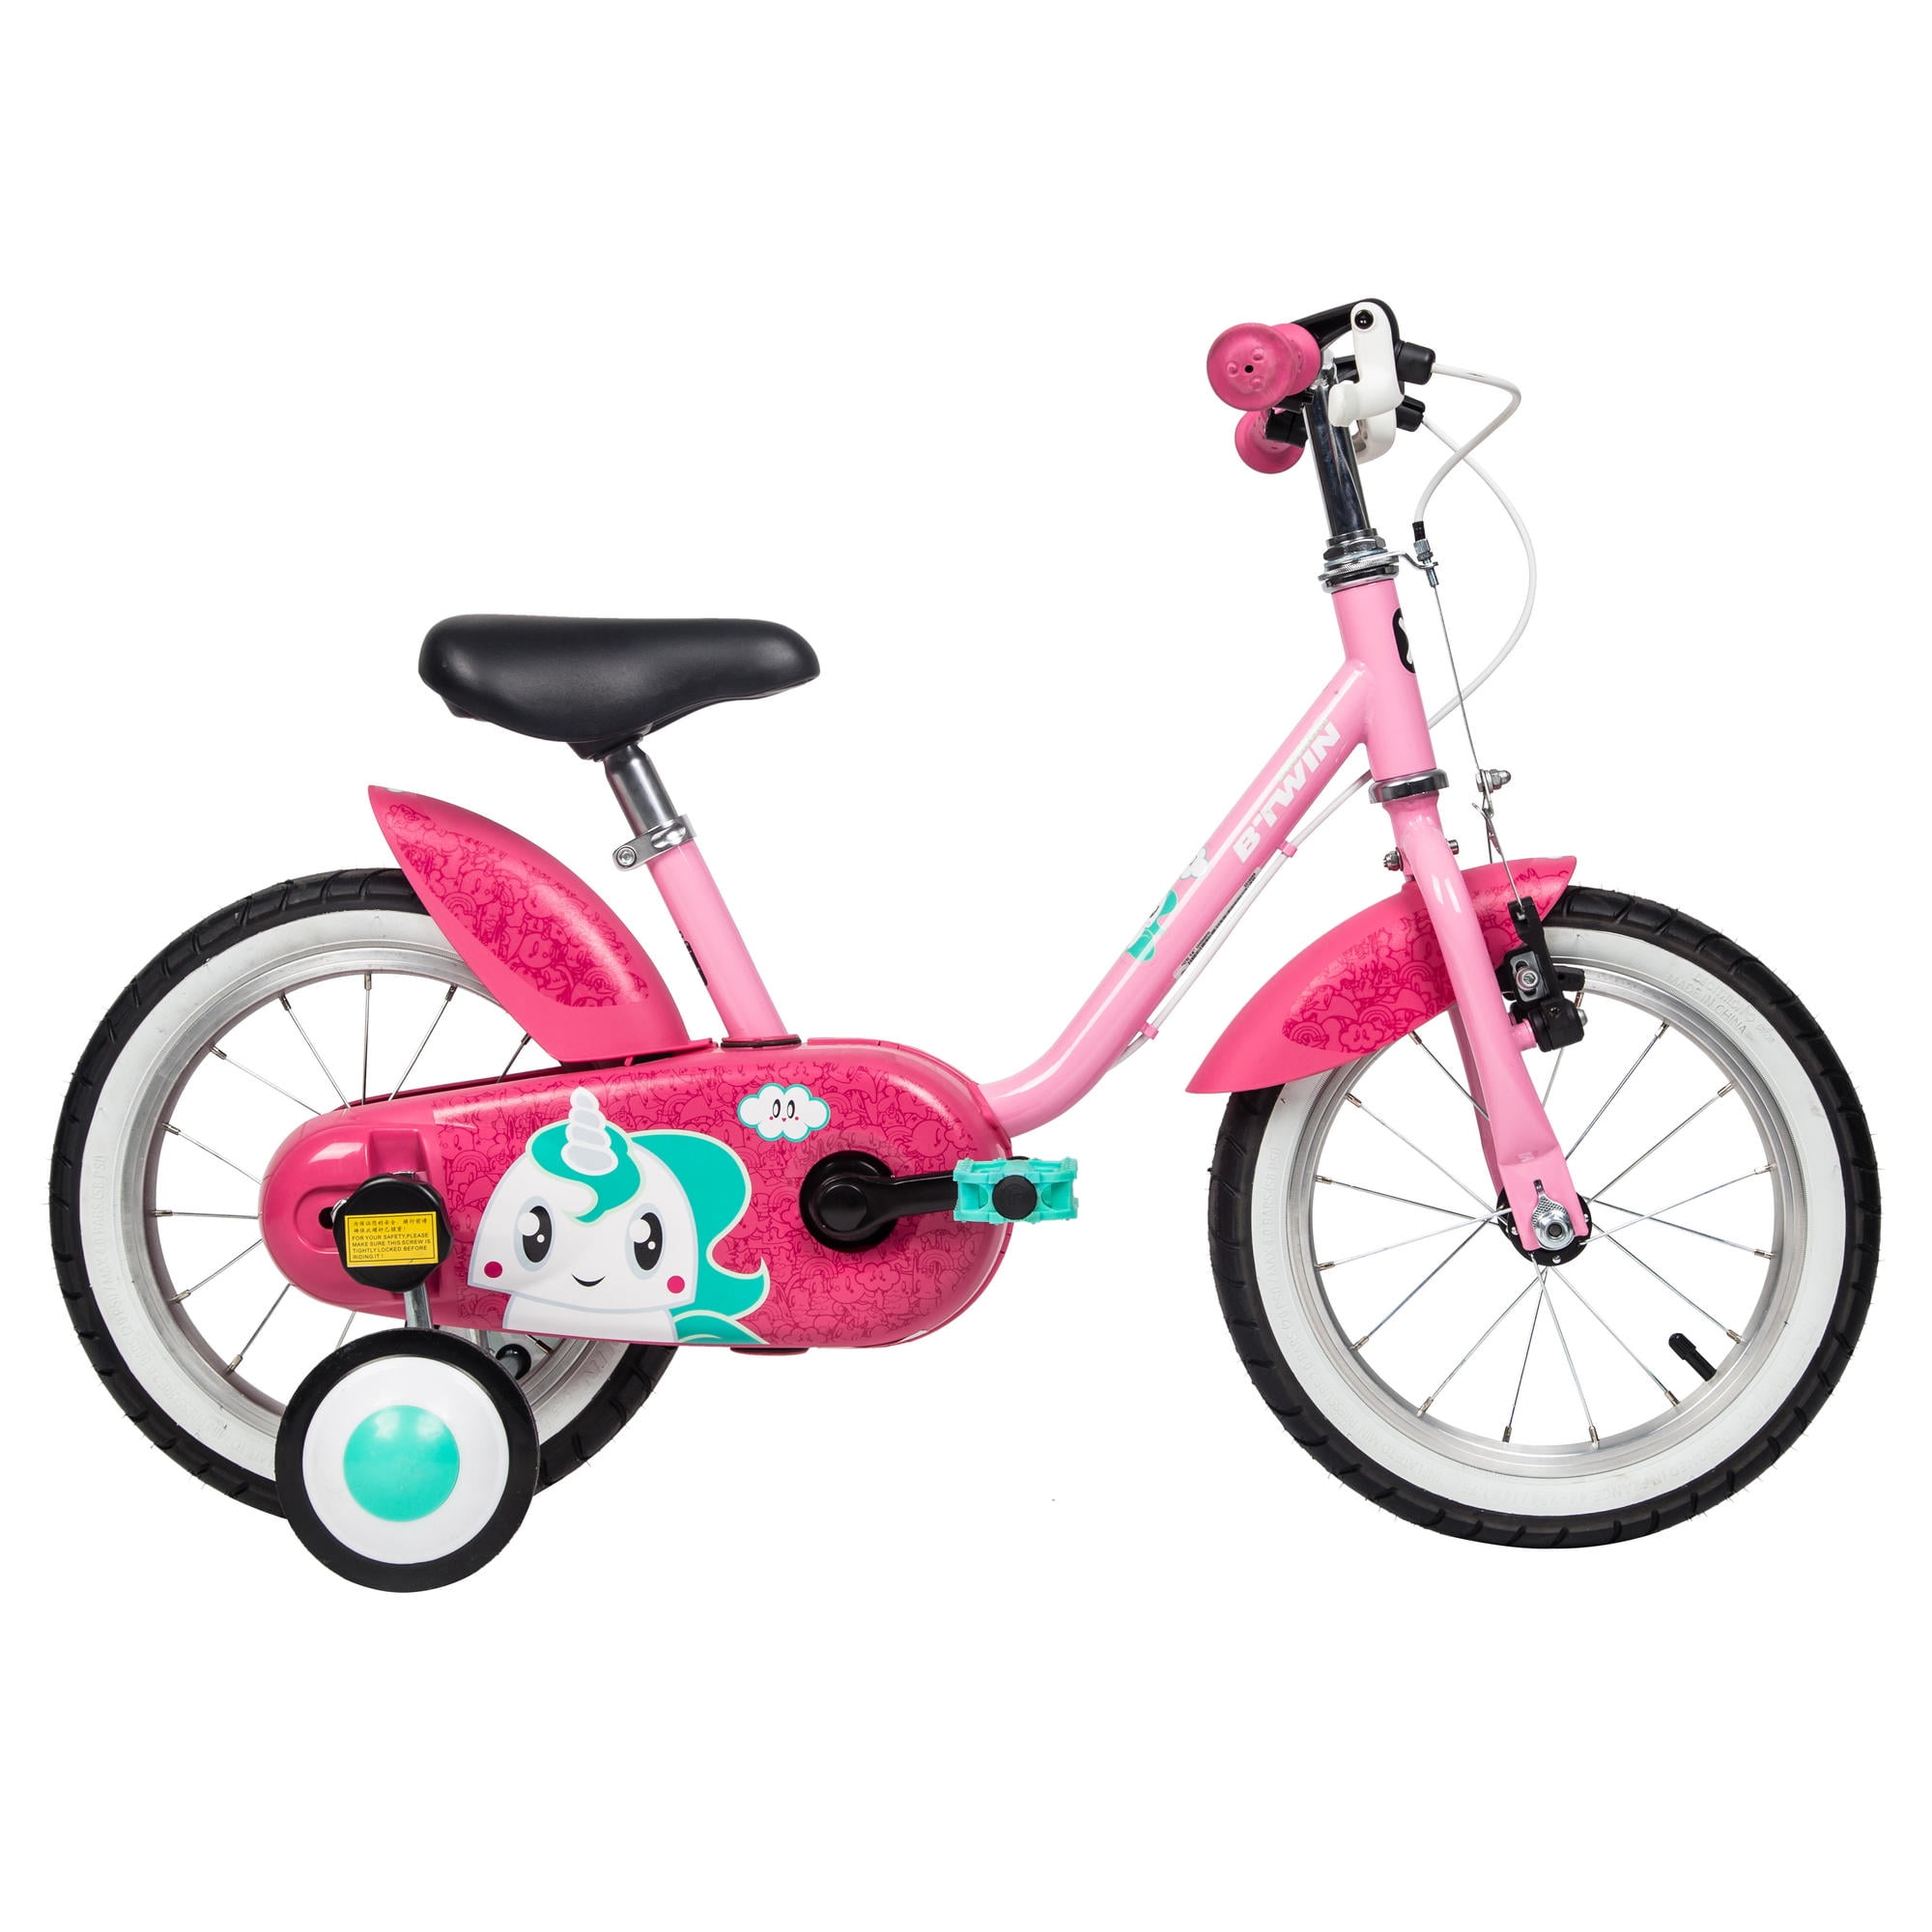 vilano girl's bike